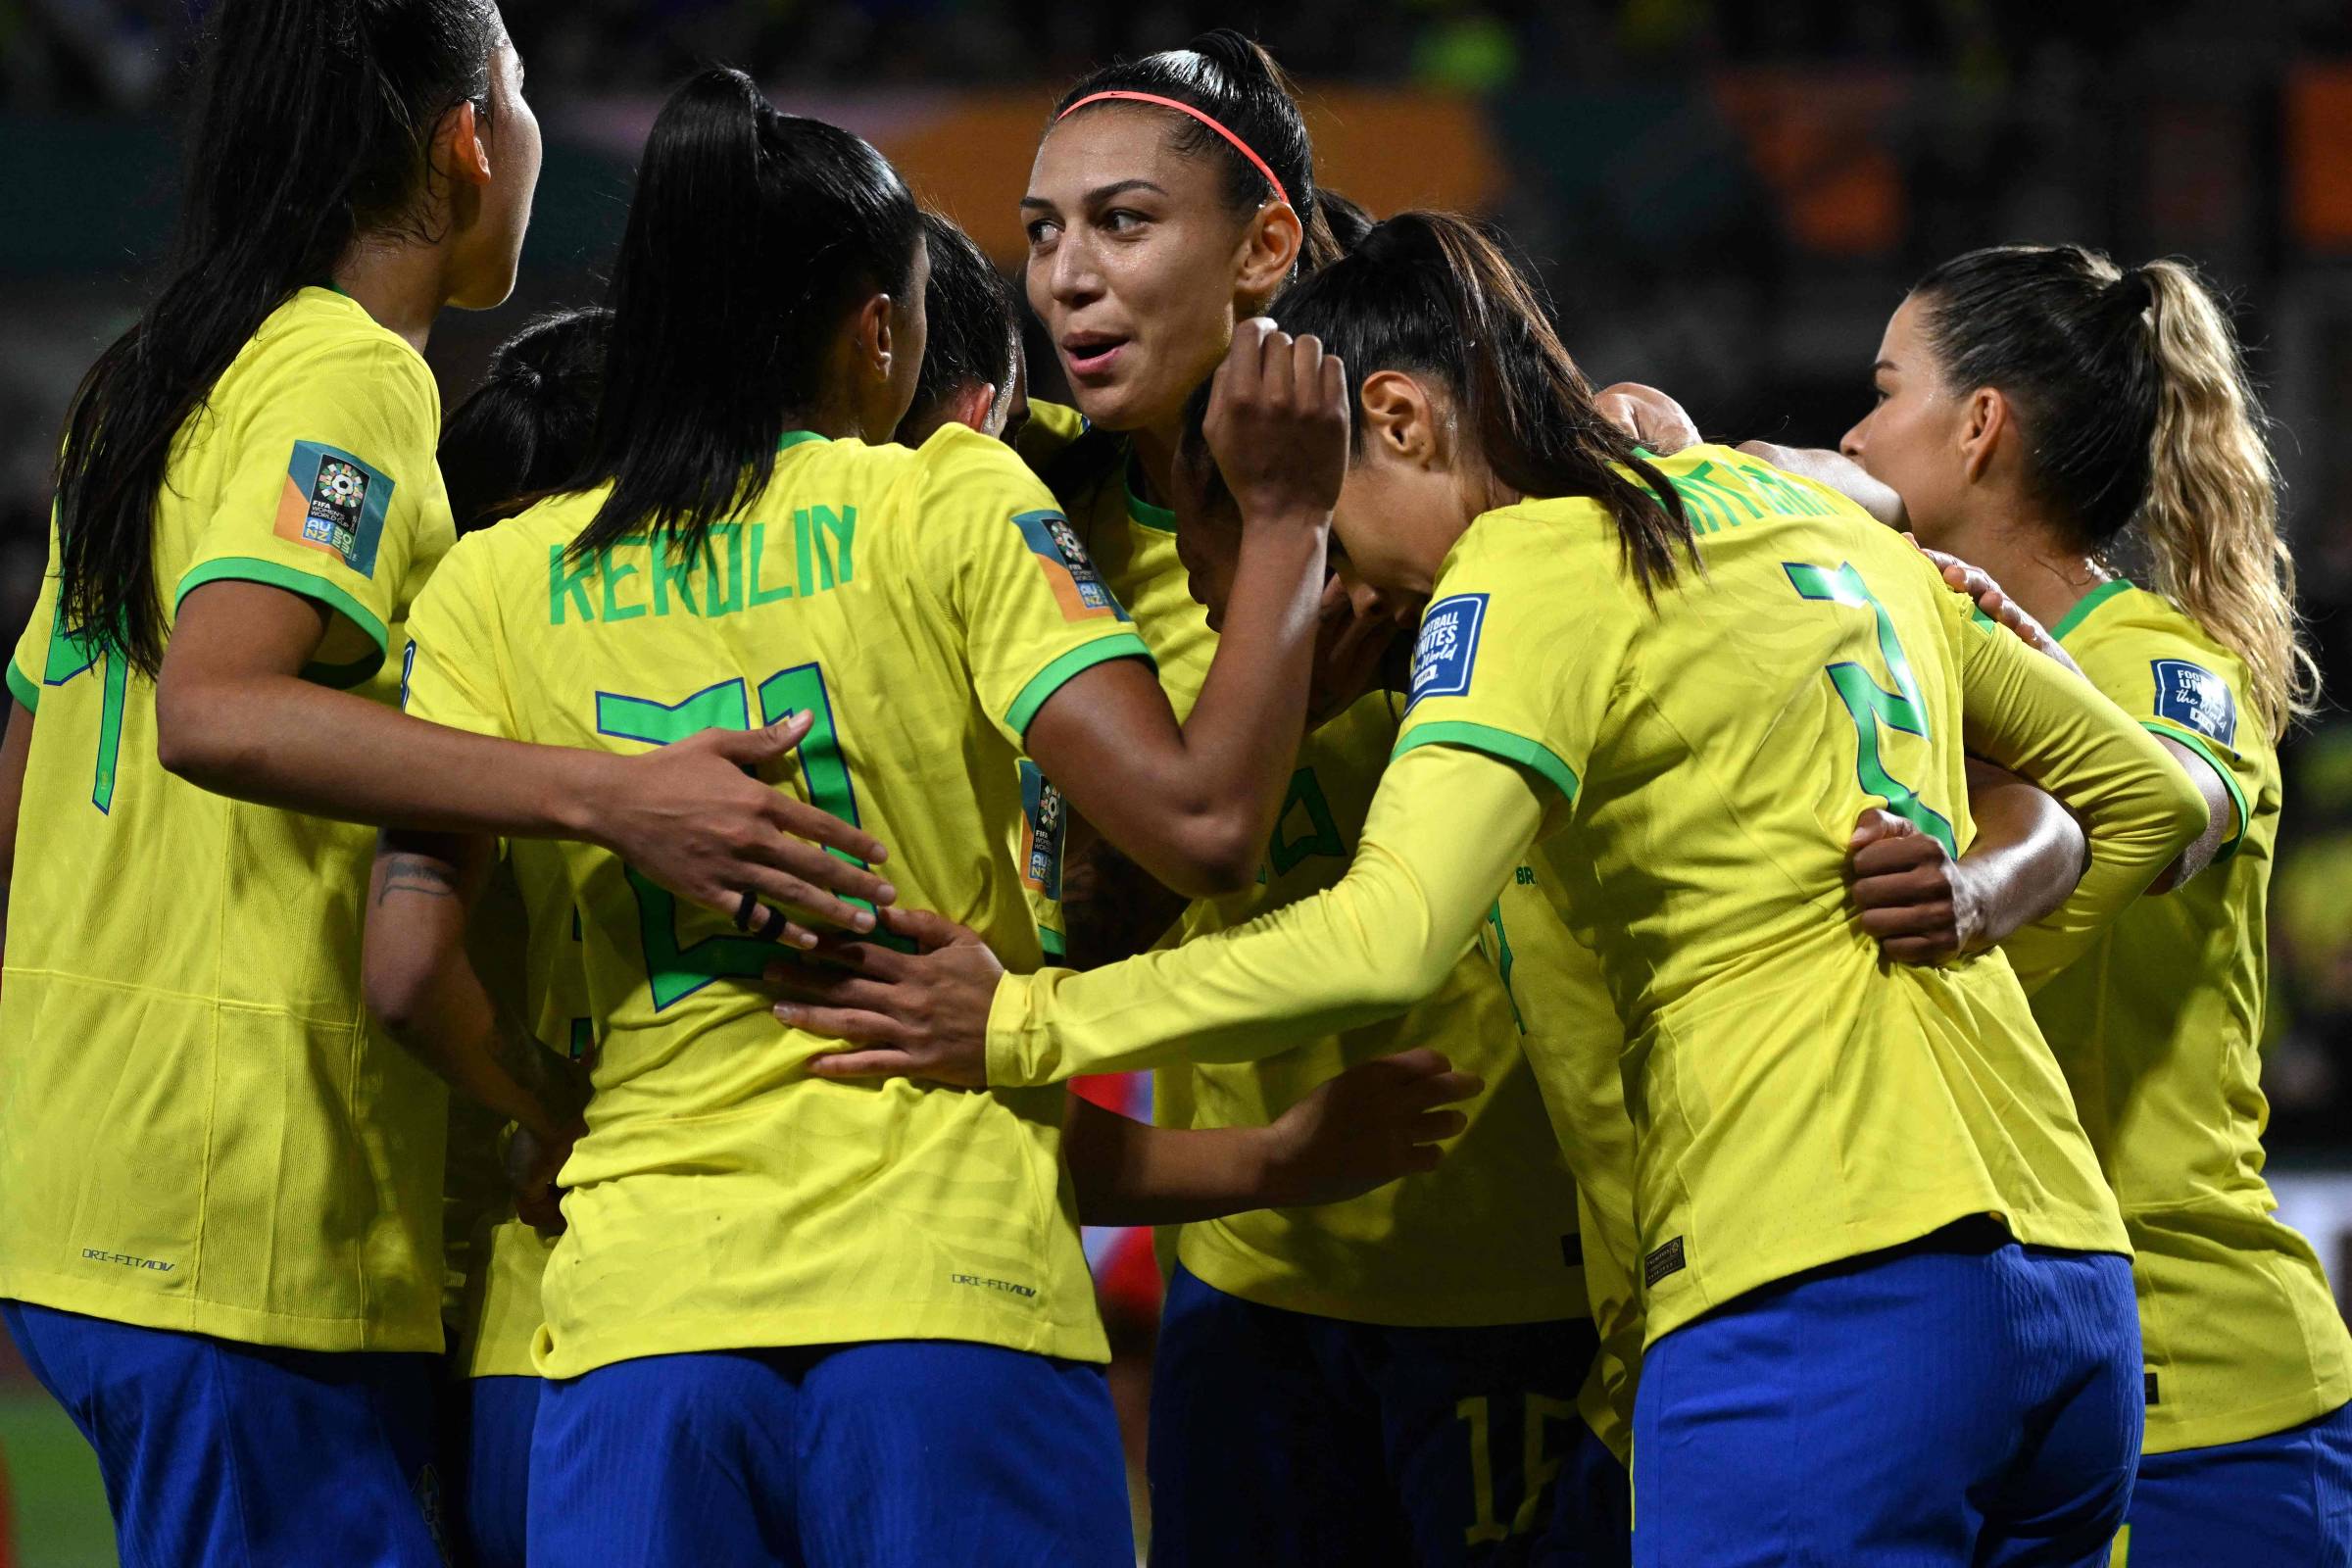 Fifa apresenta pôster oficial da Copa do Mundo Feminina; veja